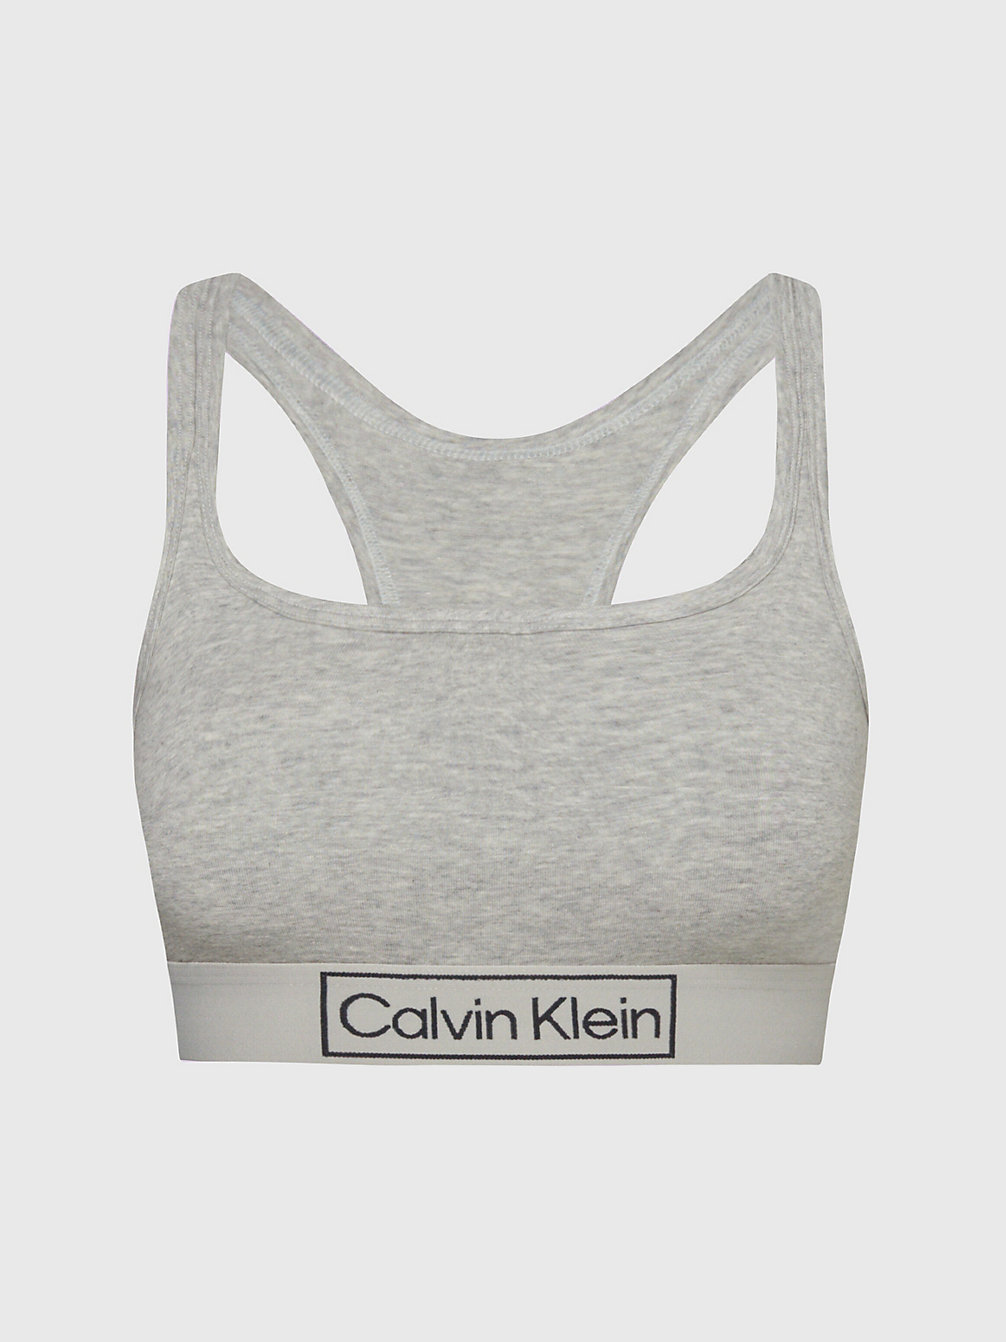 GREY HEATHER Bralette – Reimagine Heritage undefined Damen Calvin Klein